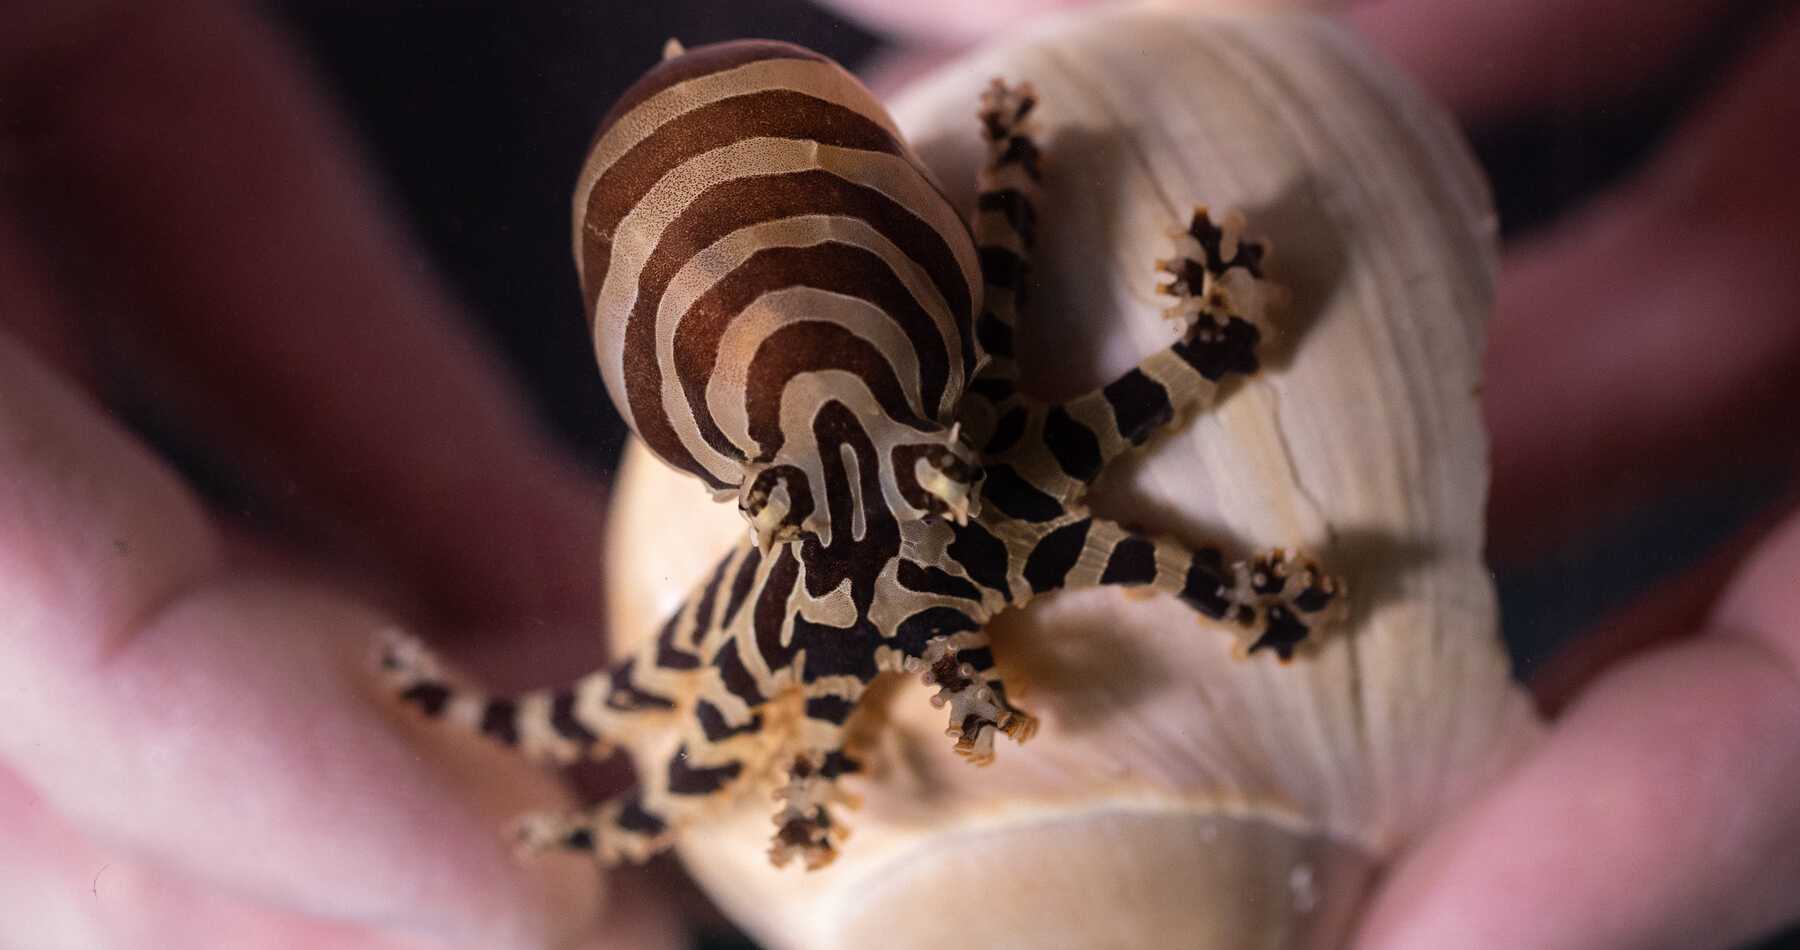 Полоски осьминогов оказались неповторимыми, как отпечатки пальцев